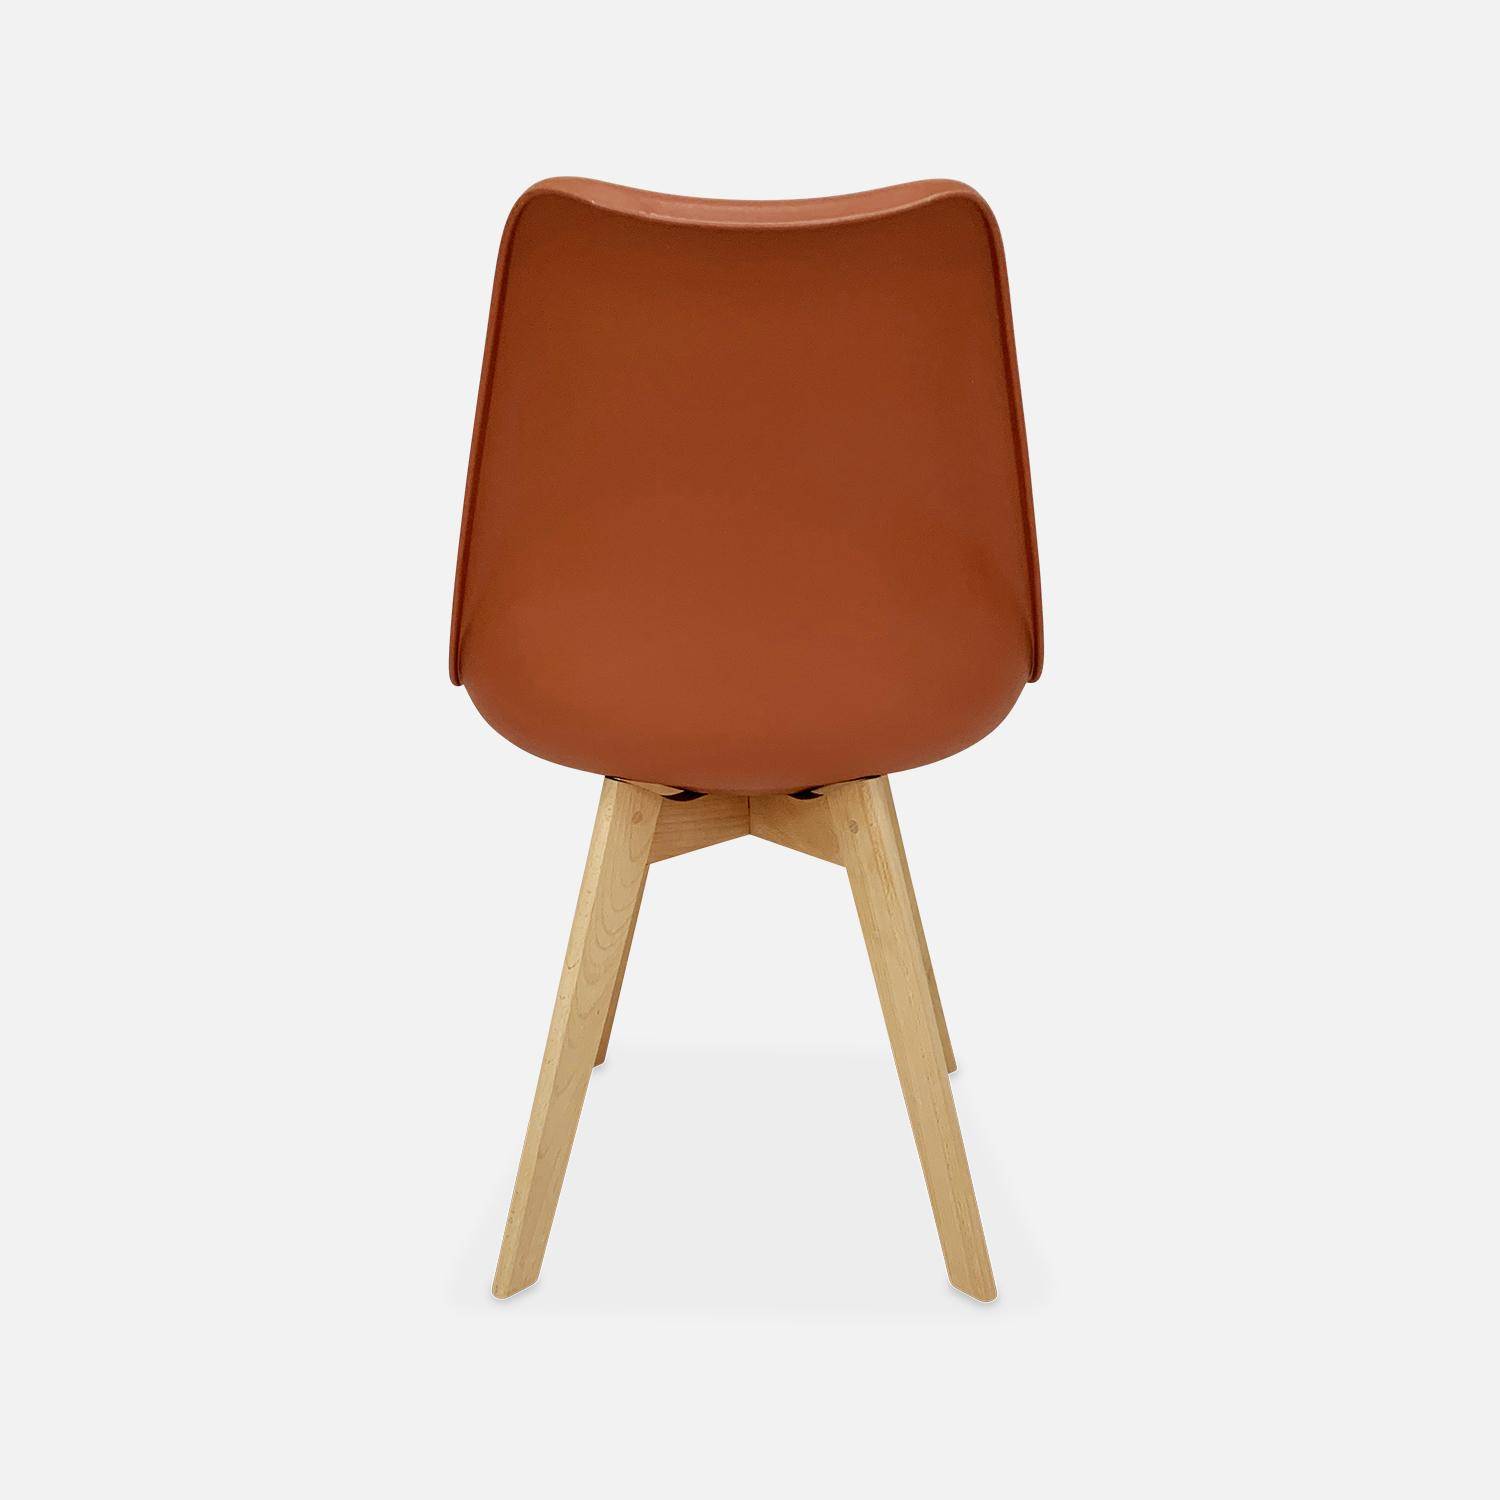 Conjunto de 4 sillas escandinavas, patas de madera de haya, asientos individuales, terracota,sweeek,Photo7